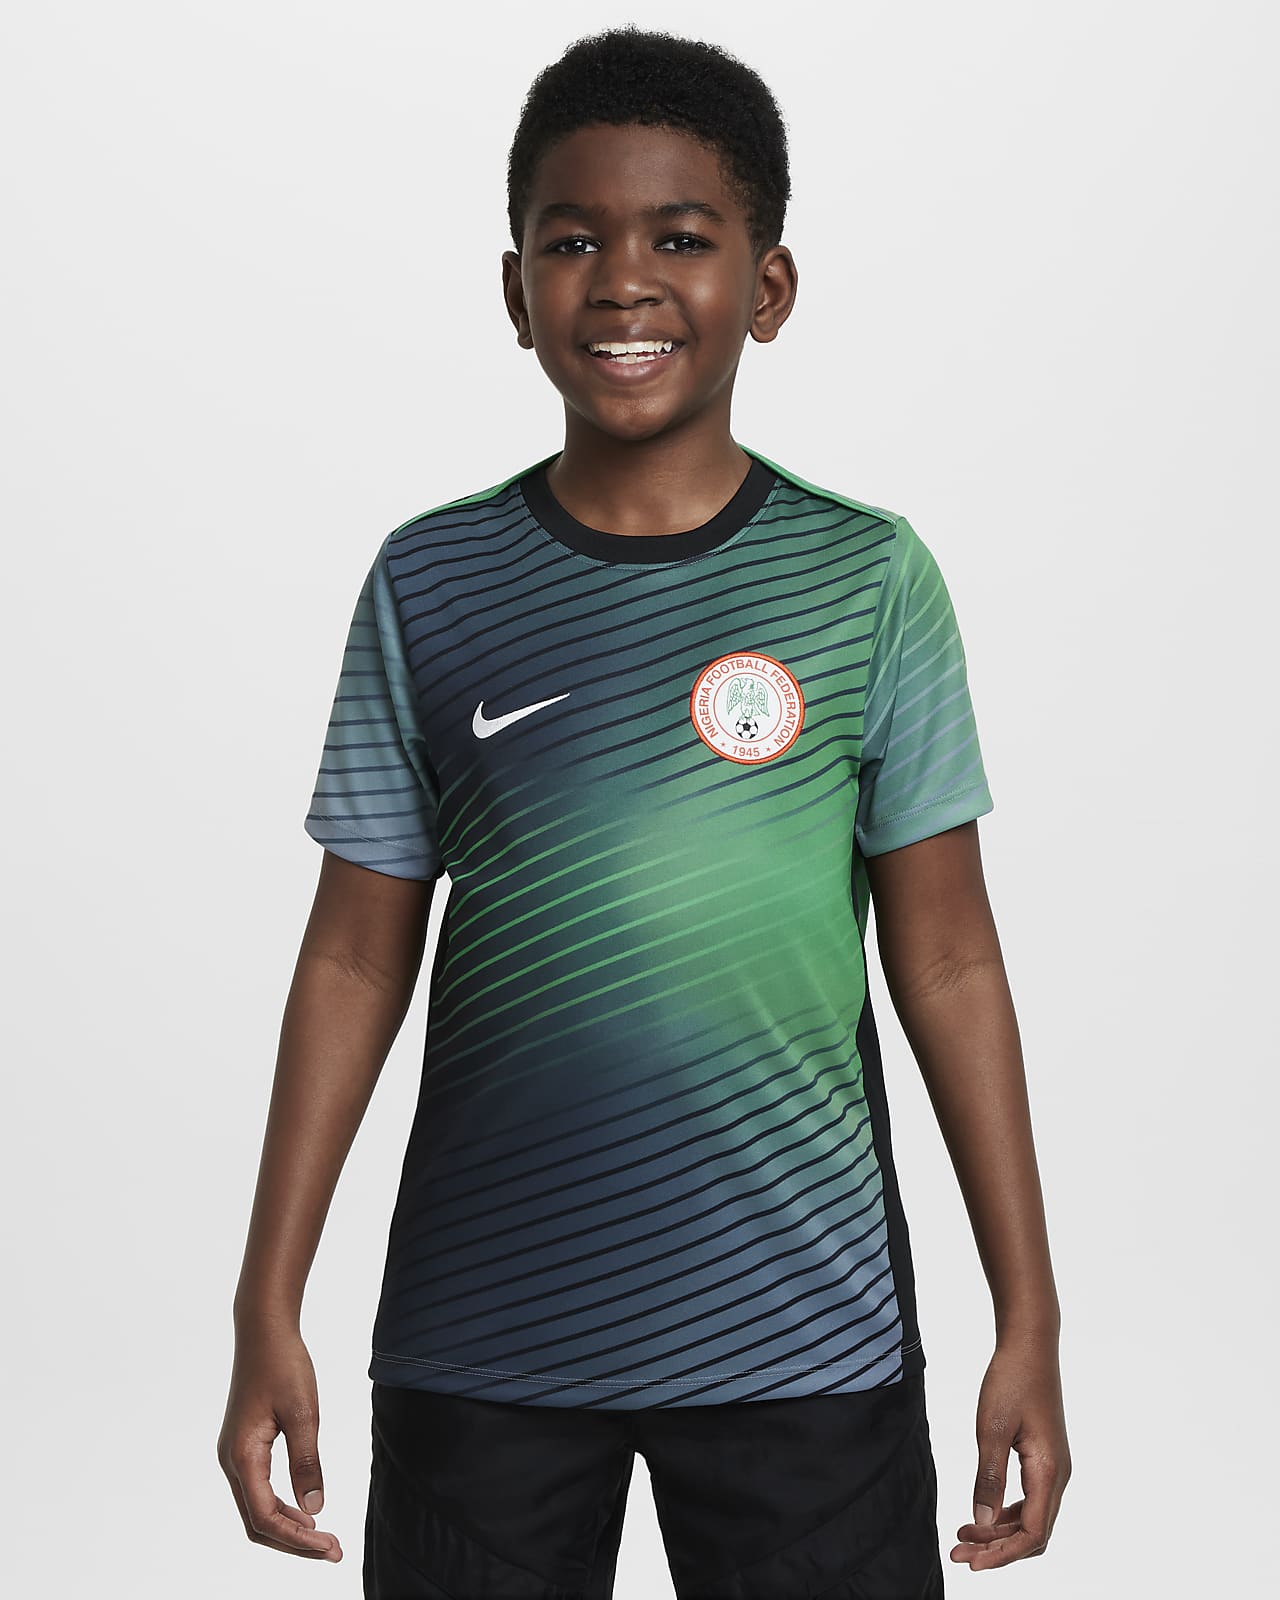 Předzápasové fotbalové tričko Nike Dri-FIT Nigeria Academy Pro pro větší děti s krátkým rukávem